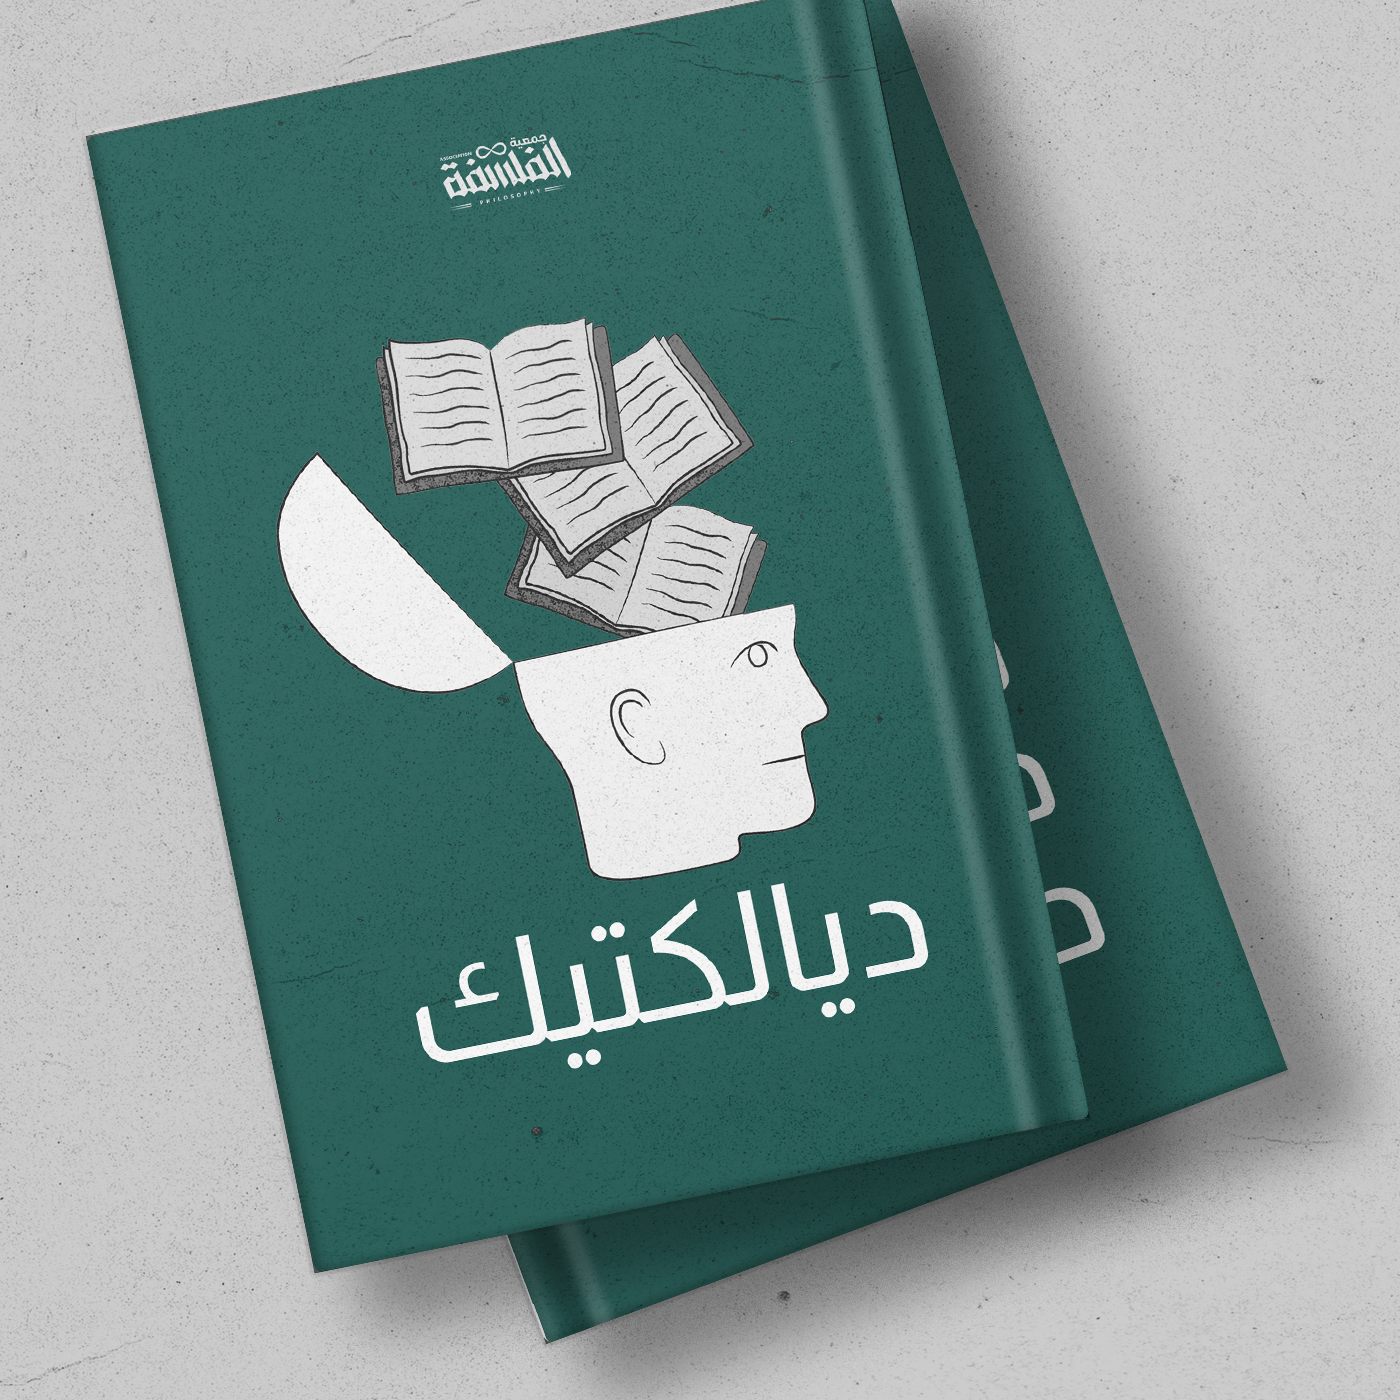 كتاب “الفلسفة تدخل المدرسة” لماثيو ليبمان مع د. عماد الزهراني